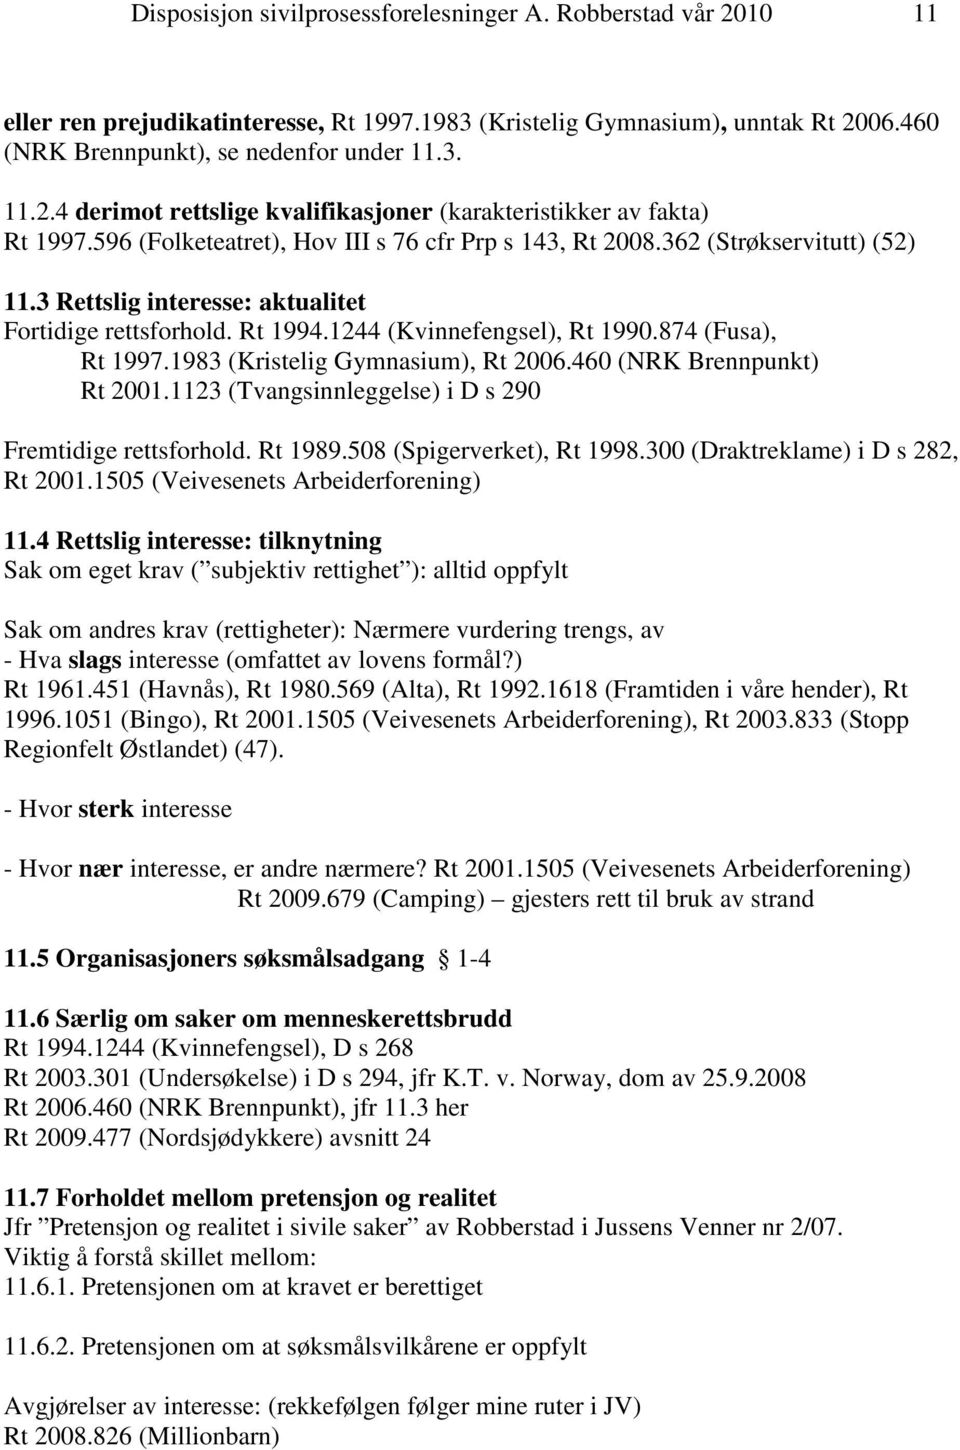 1983 (Kristelig Gymnasium), Rt 2006.460 (NRK Brennpunkt) Rt 2001.1123 (Tvangsinnleggelse) i D s 290 Fremtidige rettsforhold. Rt 1989.508 (Spigerverket), Rt 1998.300 (Draktreklame) i D s 282, Rt 2001.